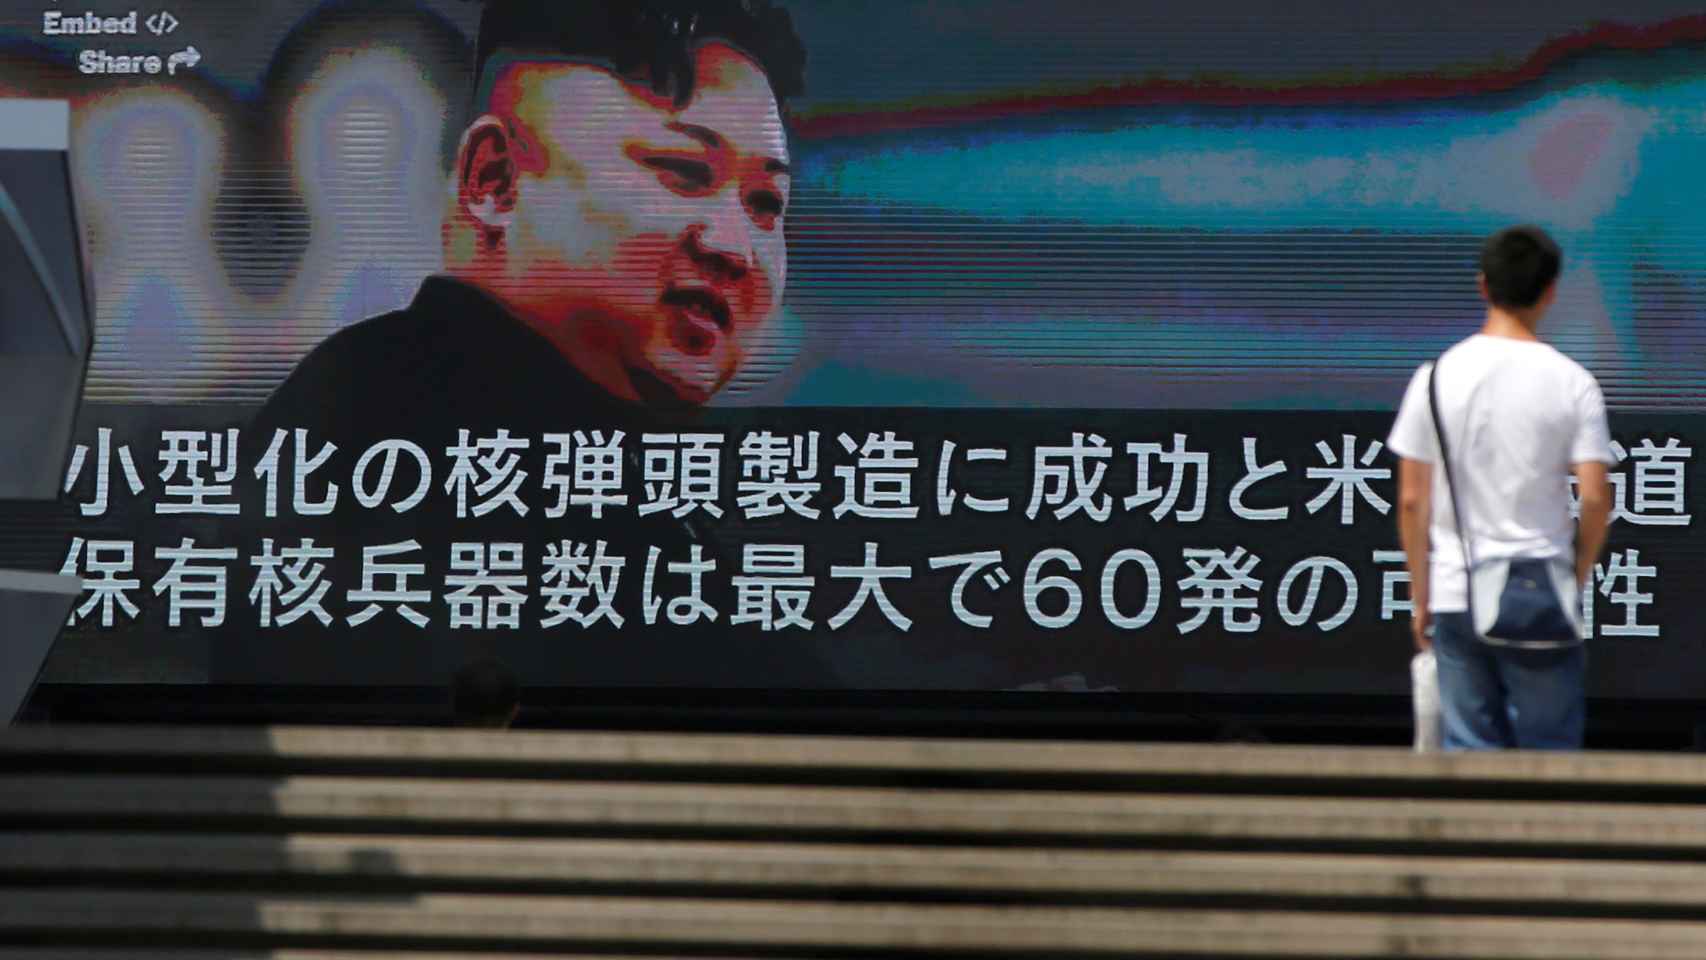 Una televisión muestra la noticia de las amenazas nucleares de Kim Jong-un